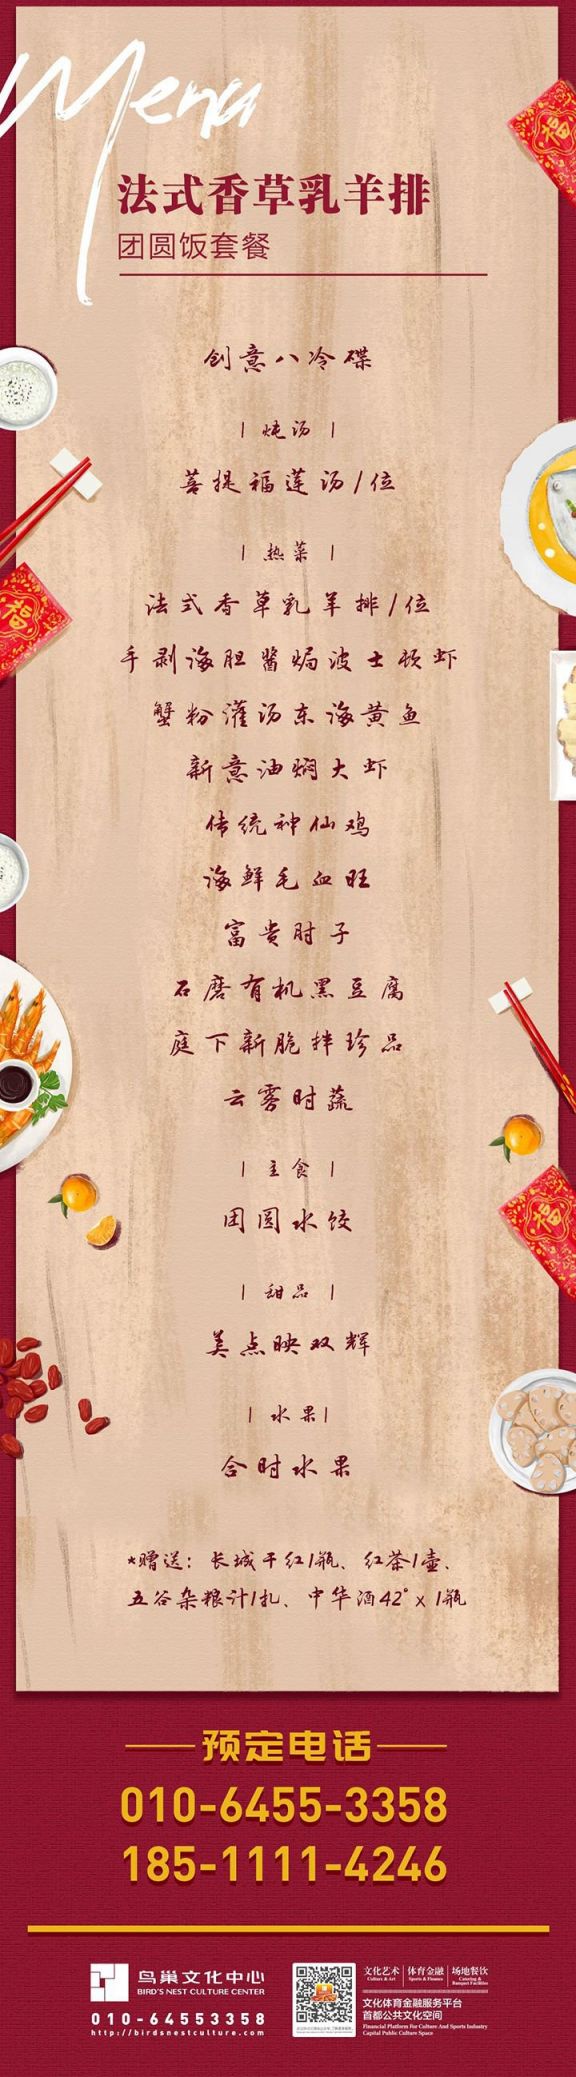 2020北京鸟巢年夜饭预订指南(多少钱 预订电话 菜单)